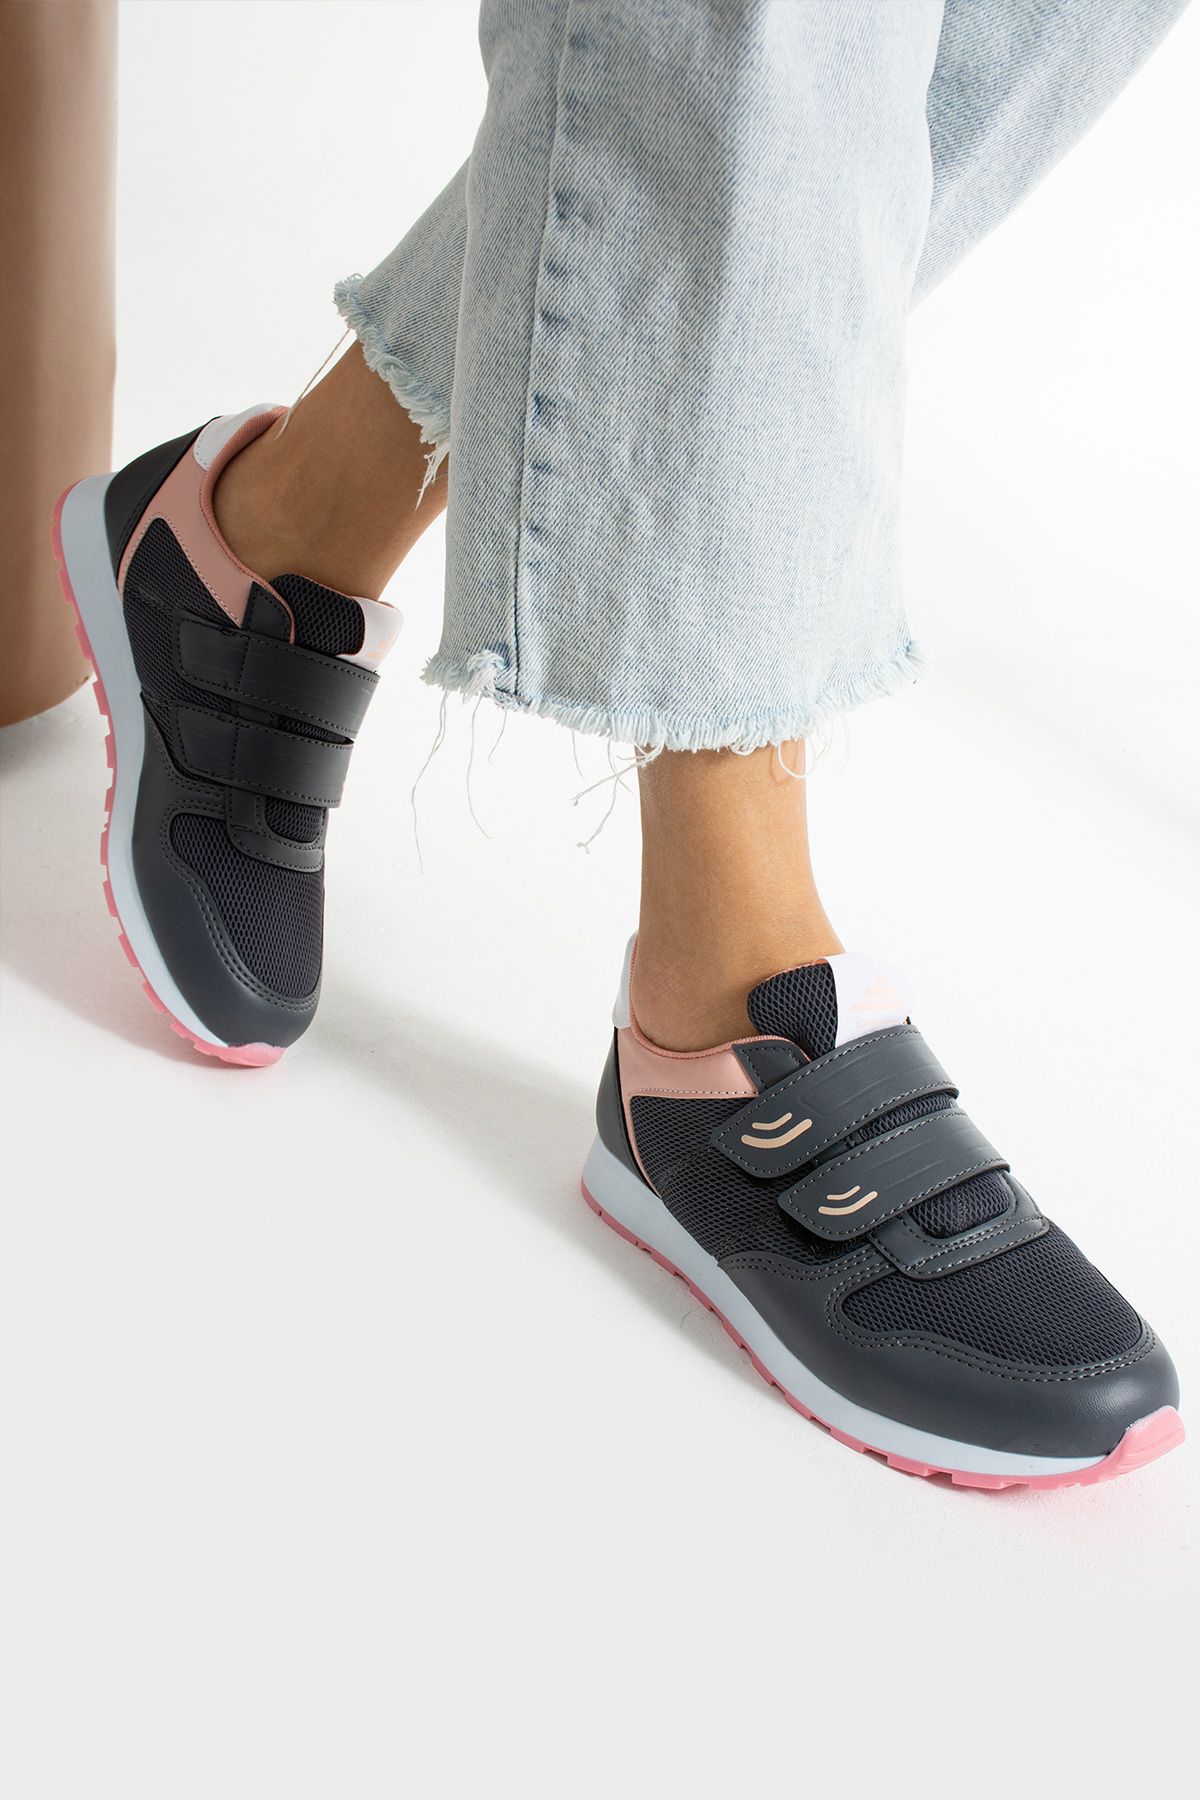 İnan Ayakkabı Kadın Füme/pudra Renk Yürüyüş Ve Günlük Kullanıma Uygun Sneakers & Spor Ayakkabı